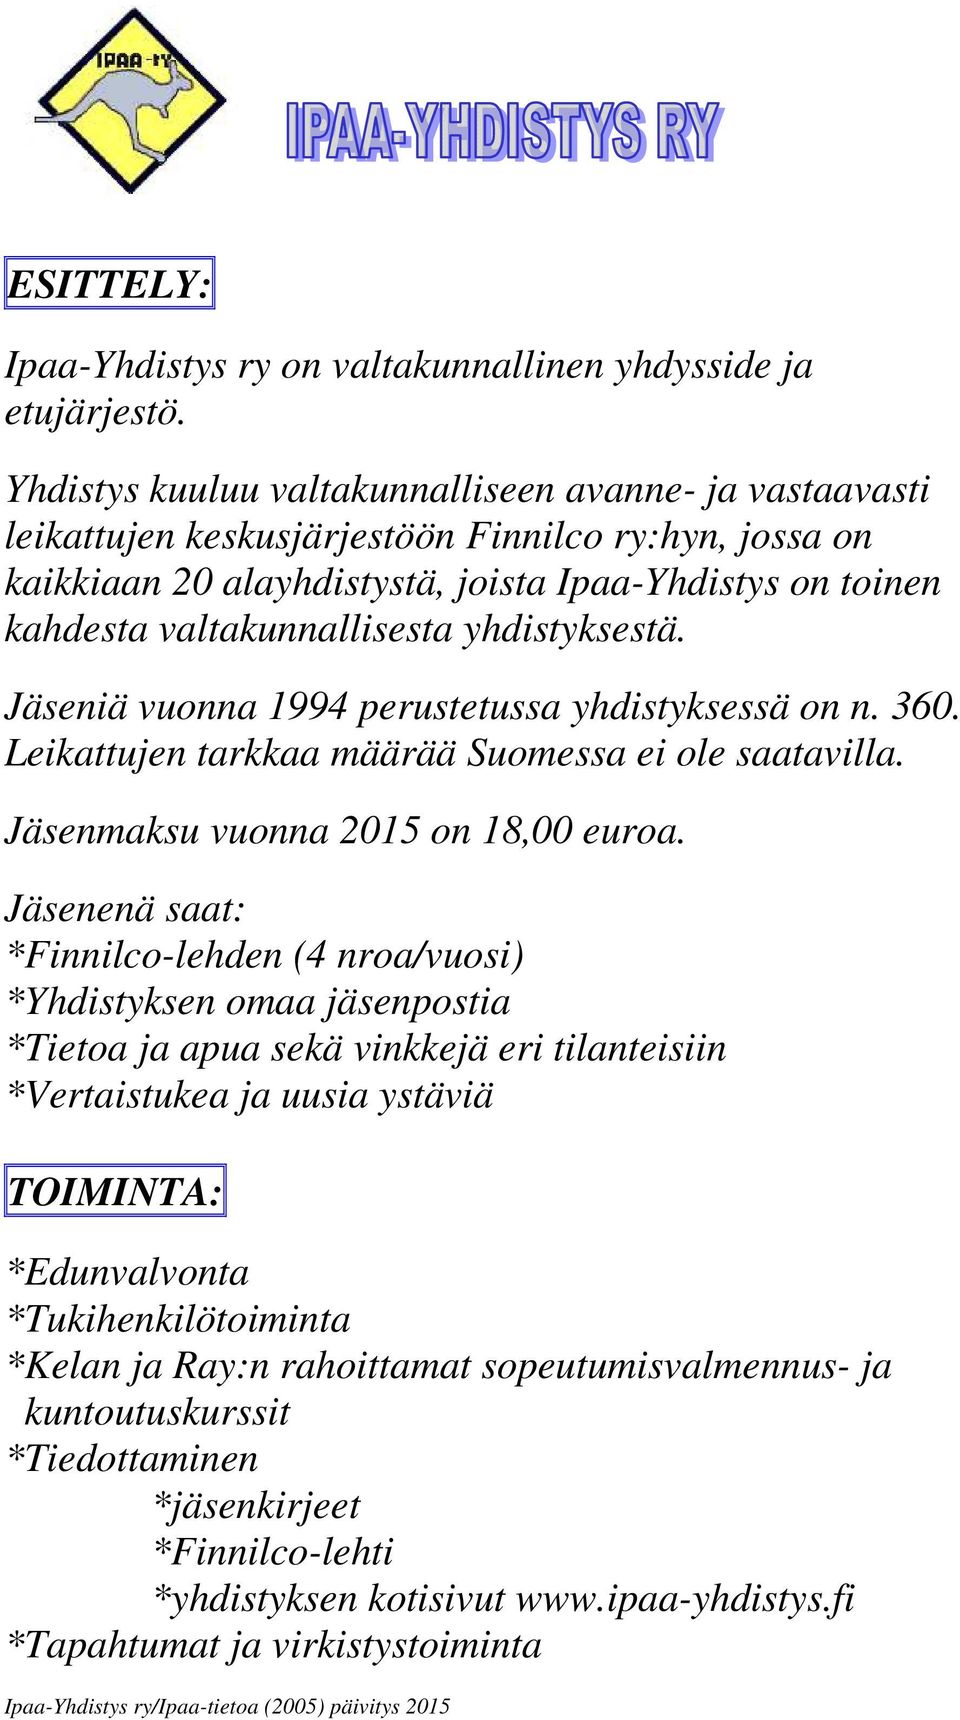 yhdistyksestä. Jäseniä vuonna 1994 perustetussa yhdistyksessä on n. 360. Leikattujen tarkkaa määrää Suomessa ei ole saatavilla. Jäsenmaksu vuonna 2015 on 18,00 euroa.